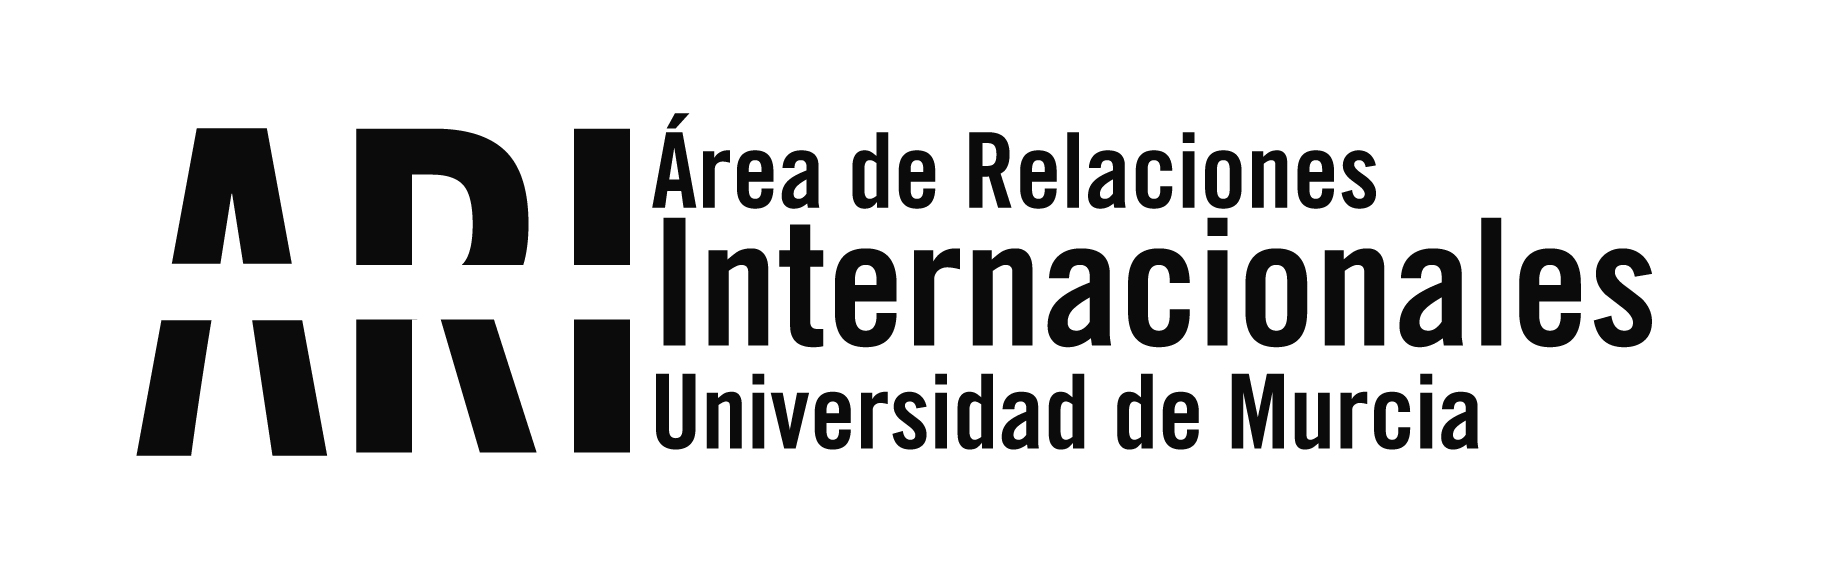 La UMU da la bienvenida a sus nuevos estudiantes internacionales del segundo cuatrimestre 2019-20 - Área de Relaciones Internacionales